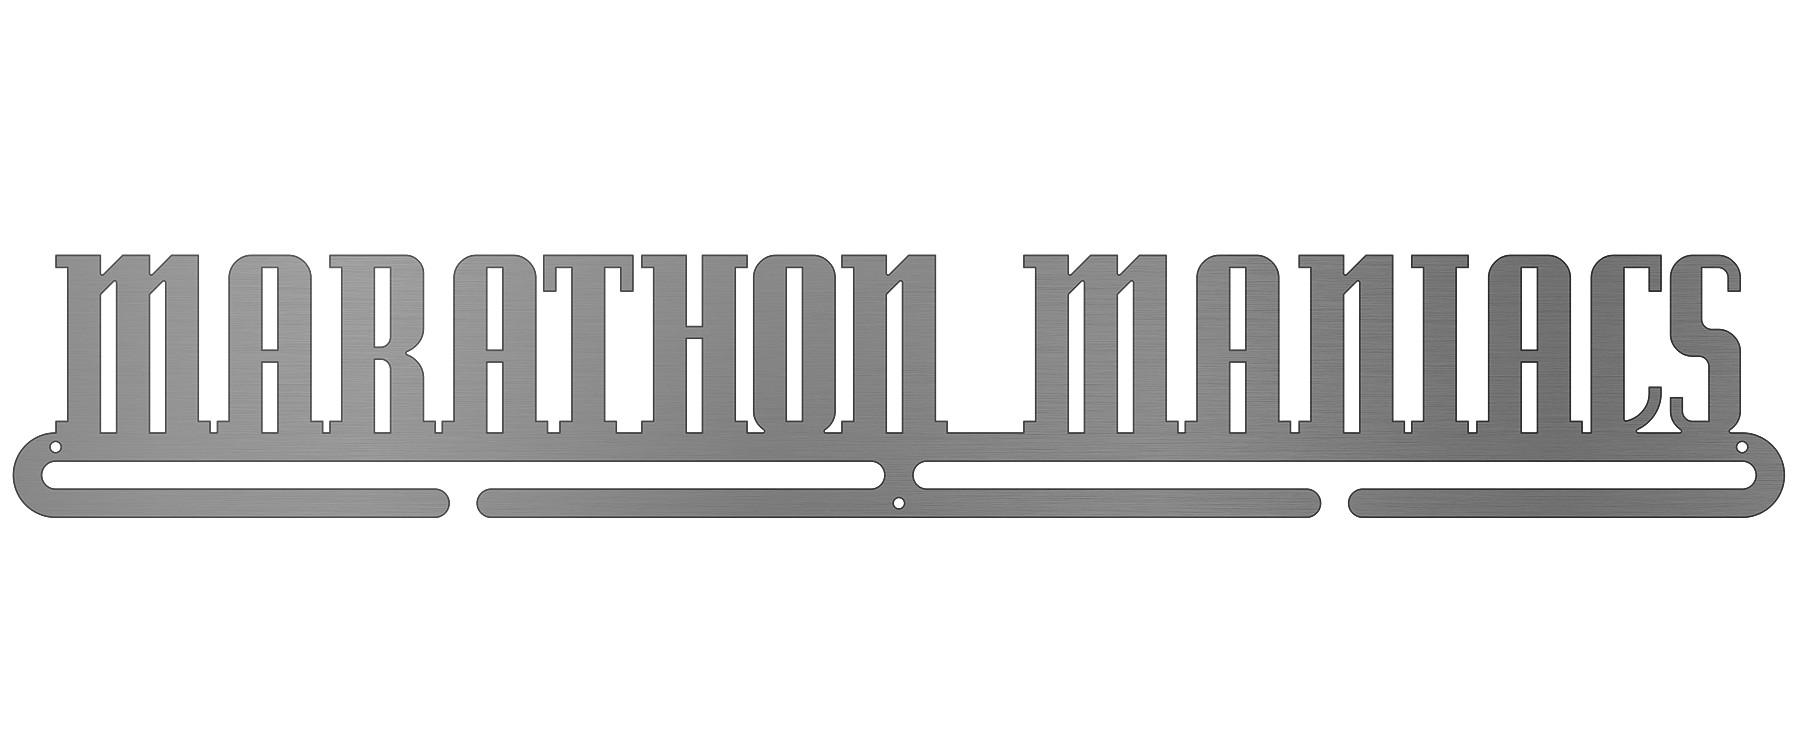 Marathon Maniacs - text only